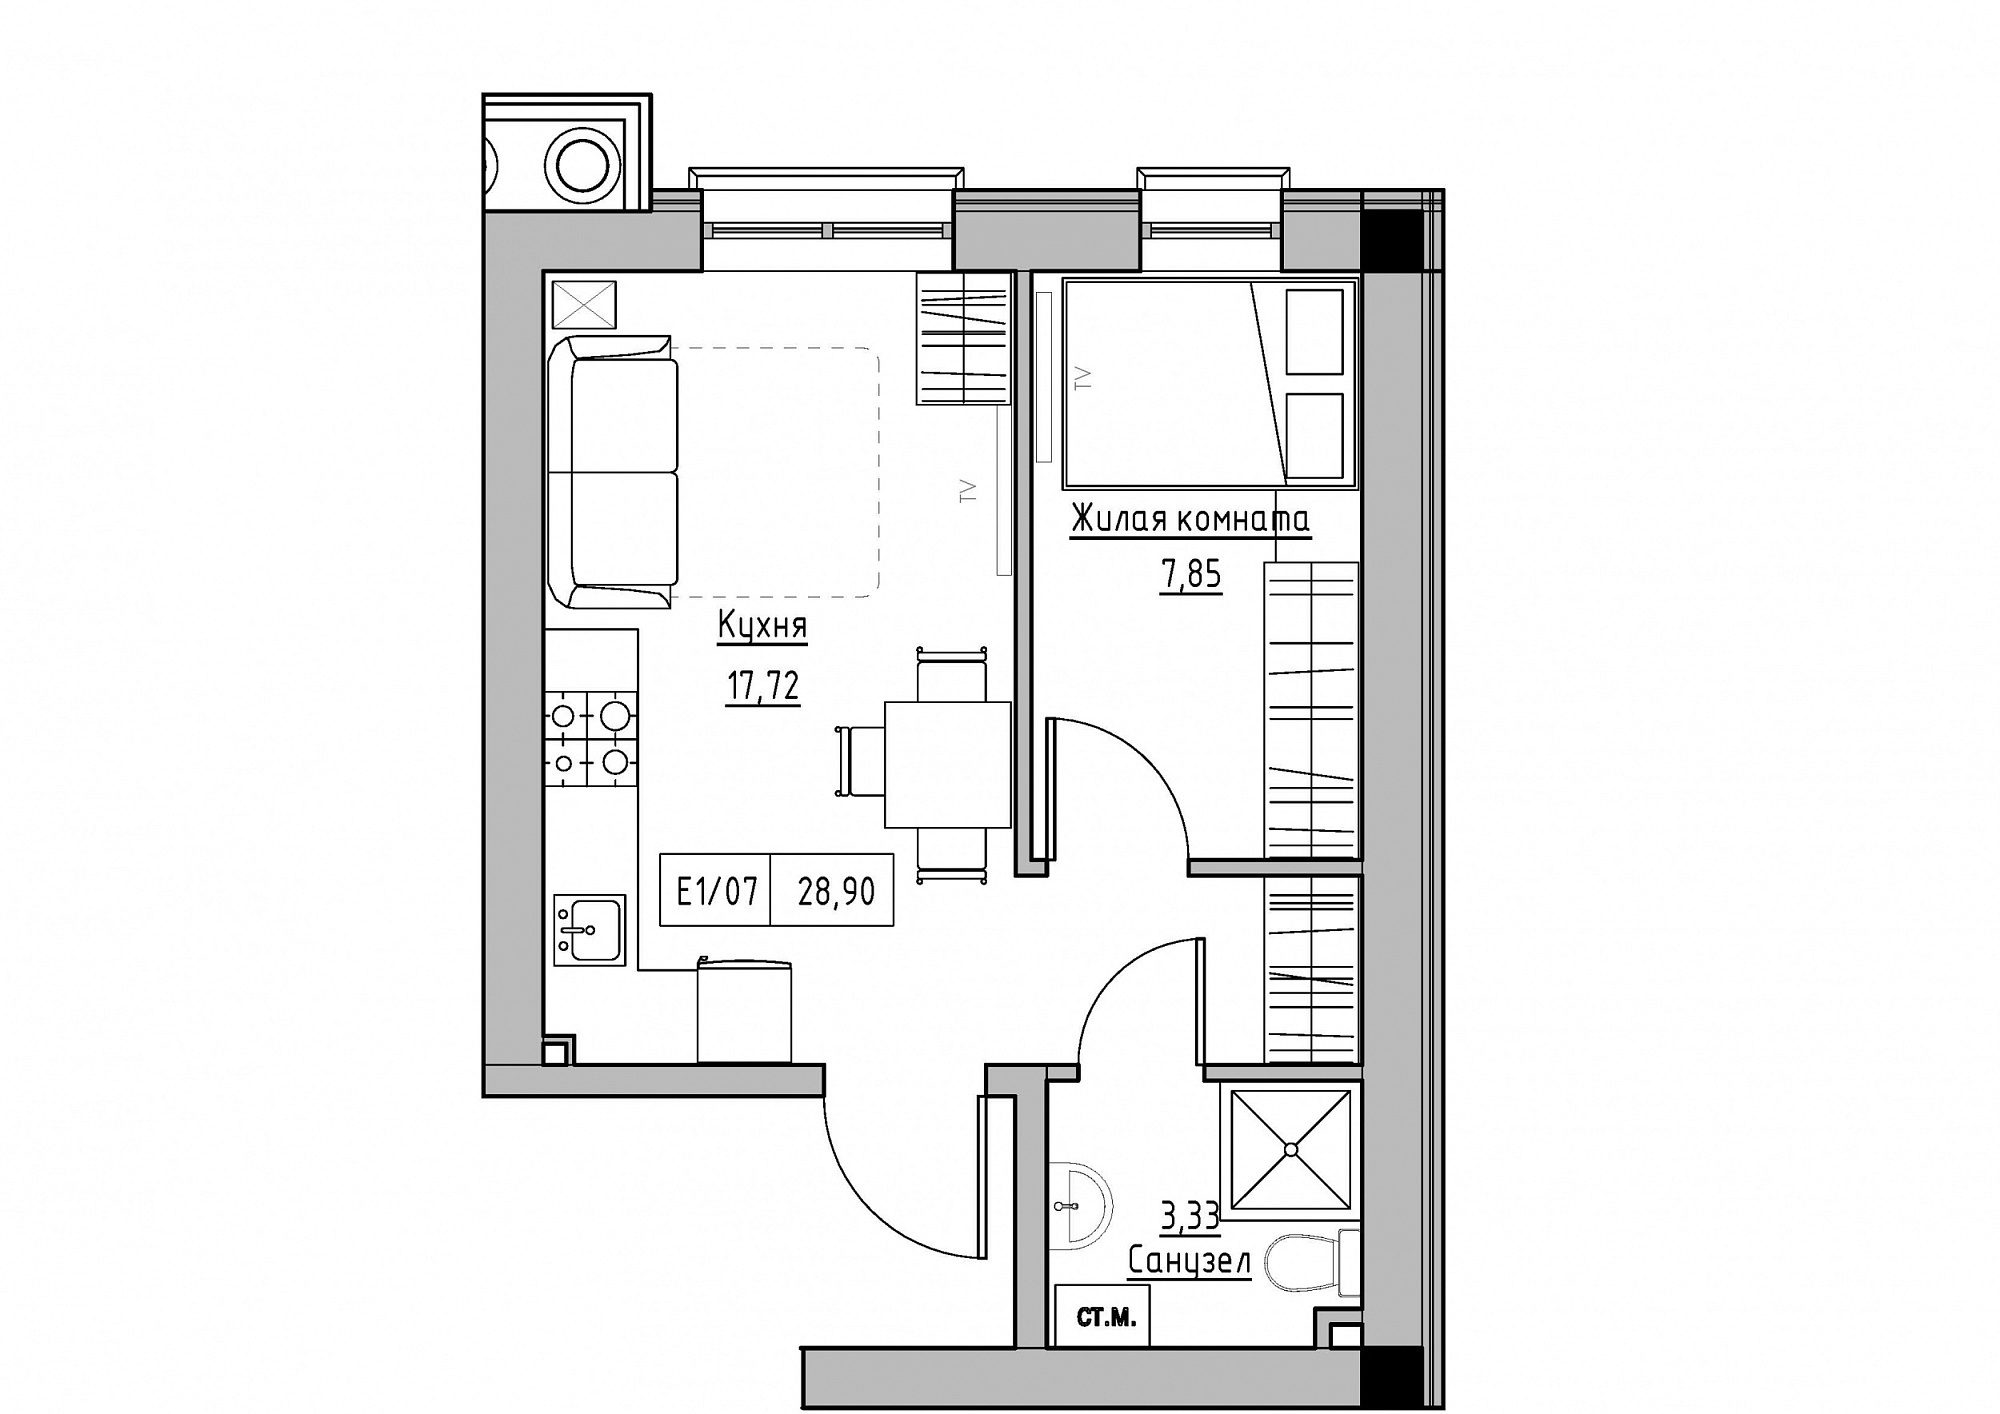 Планировка 1-к квартира площей 28.9м2, KS-012-01/0002.